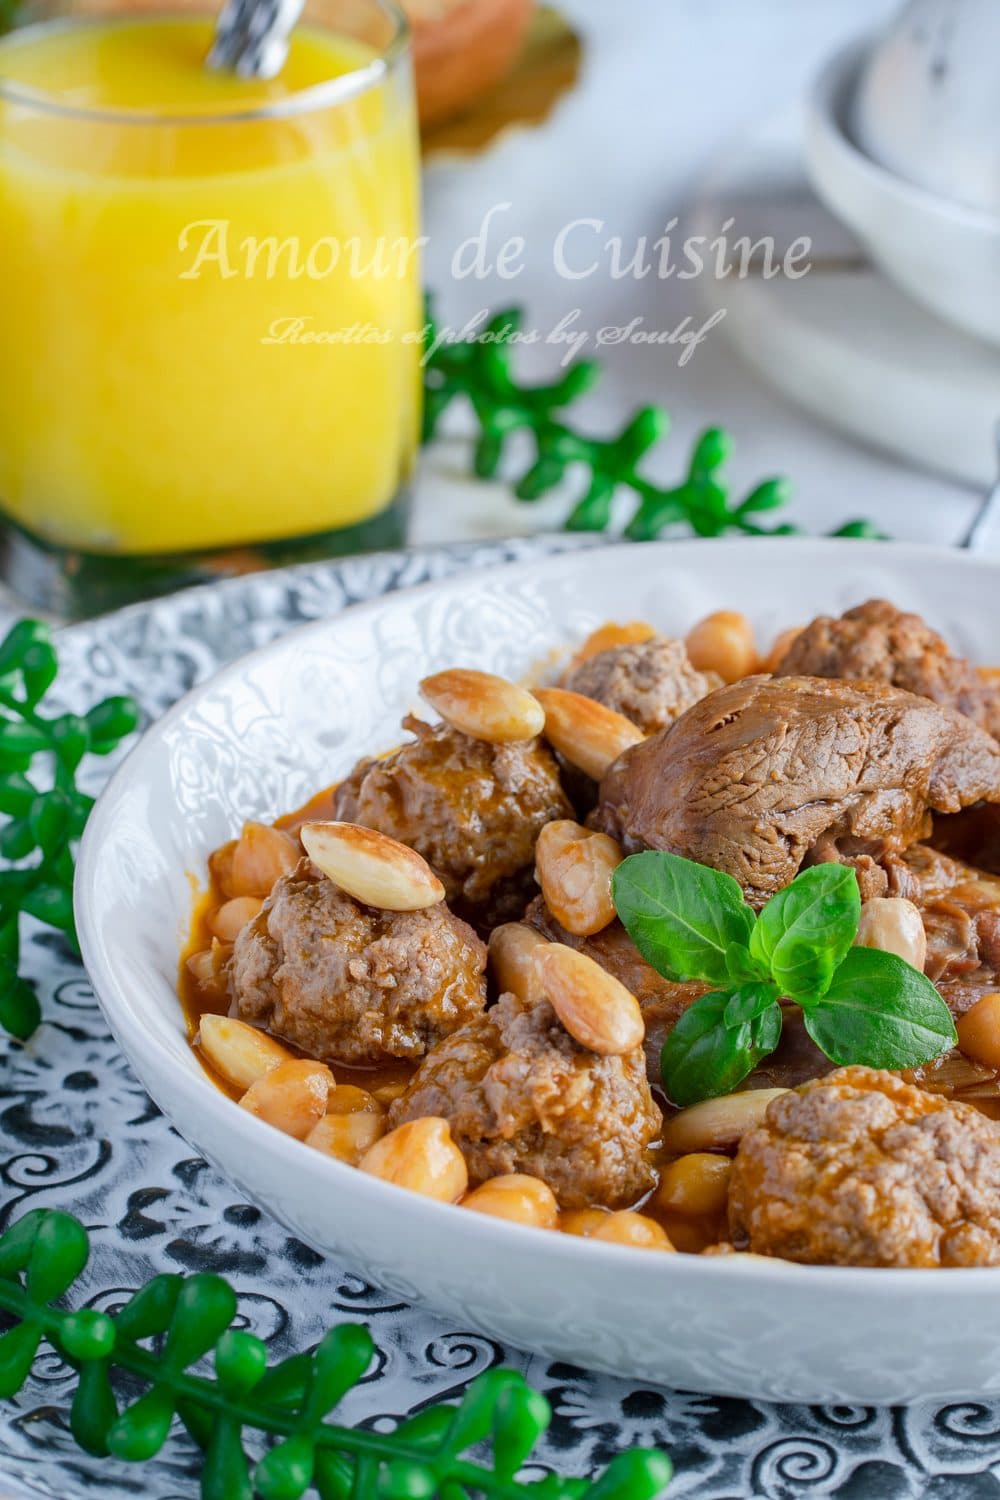 mtewem ou tajine de boulette de viande hachée à l'ail de la cuisine algerienne المثوم